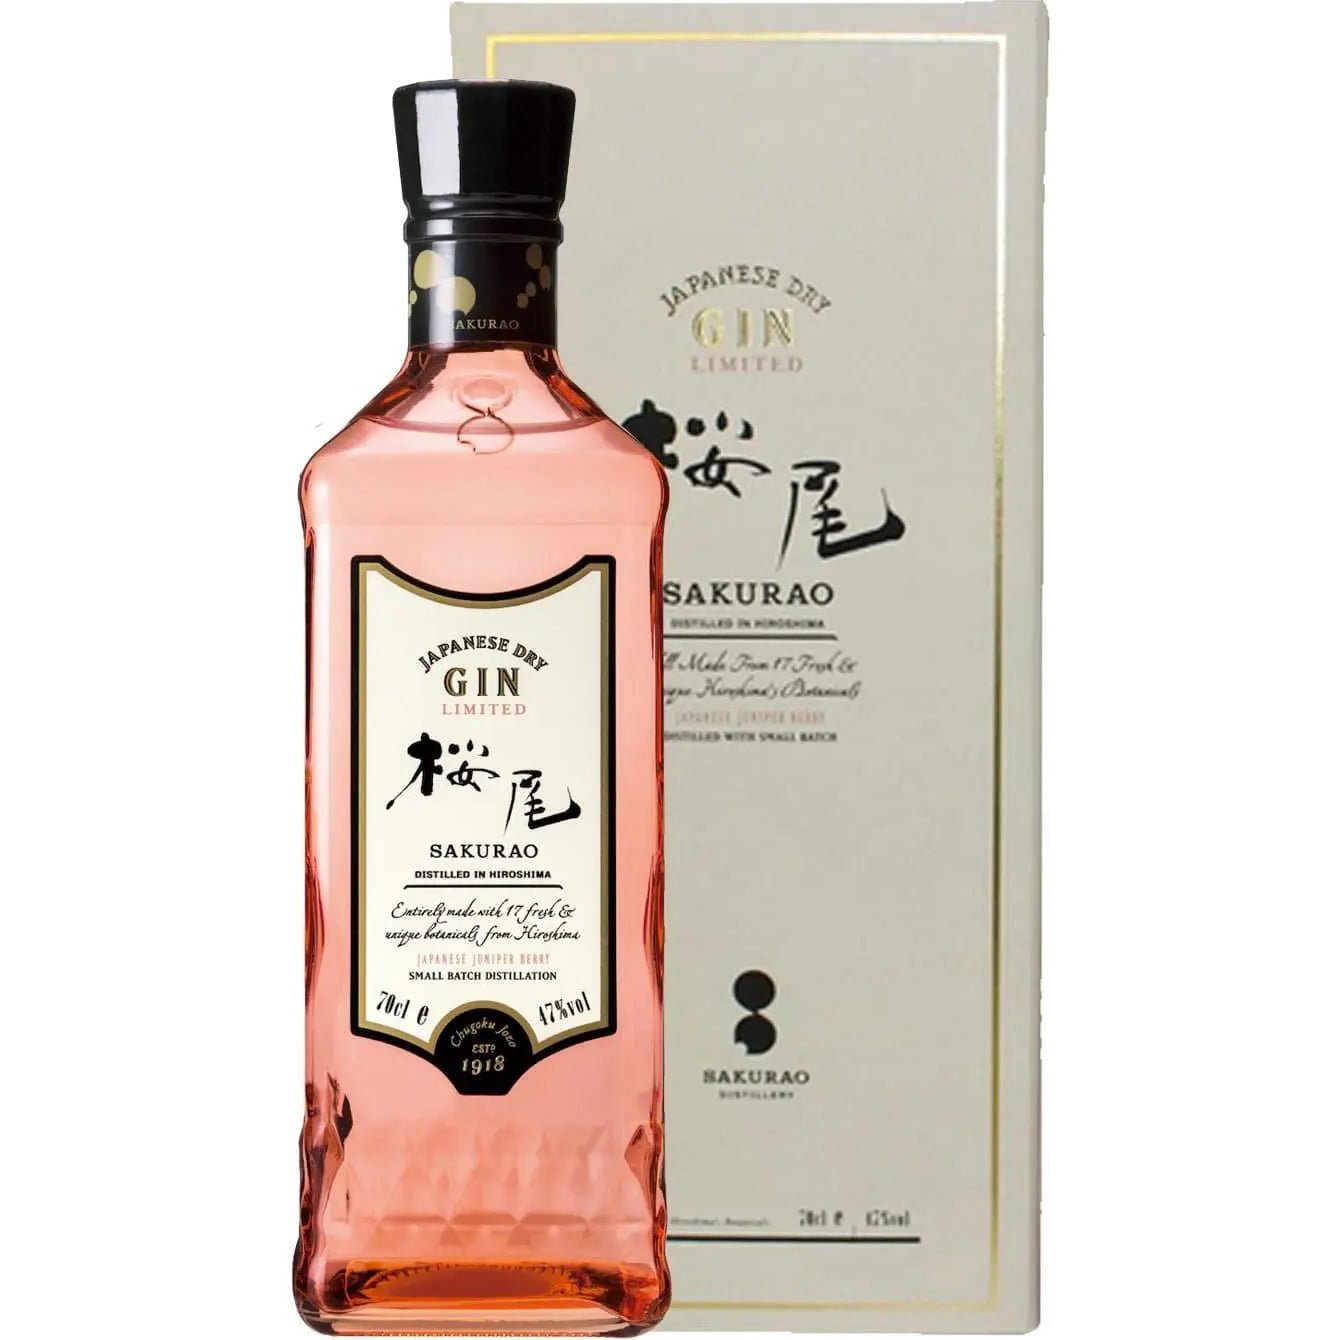 Джин Sakurao Japanes Dry Gin Limited , 47%, 0,7 л, в подарочной упаковке - фото 1